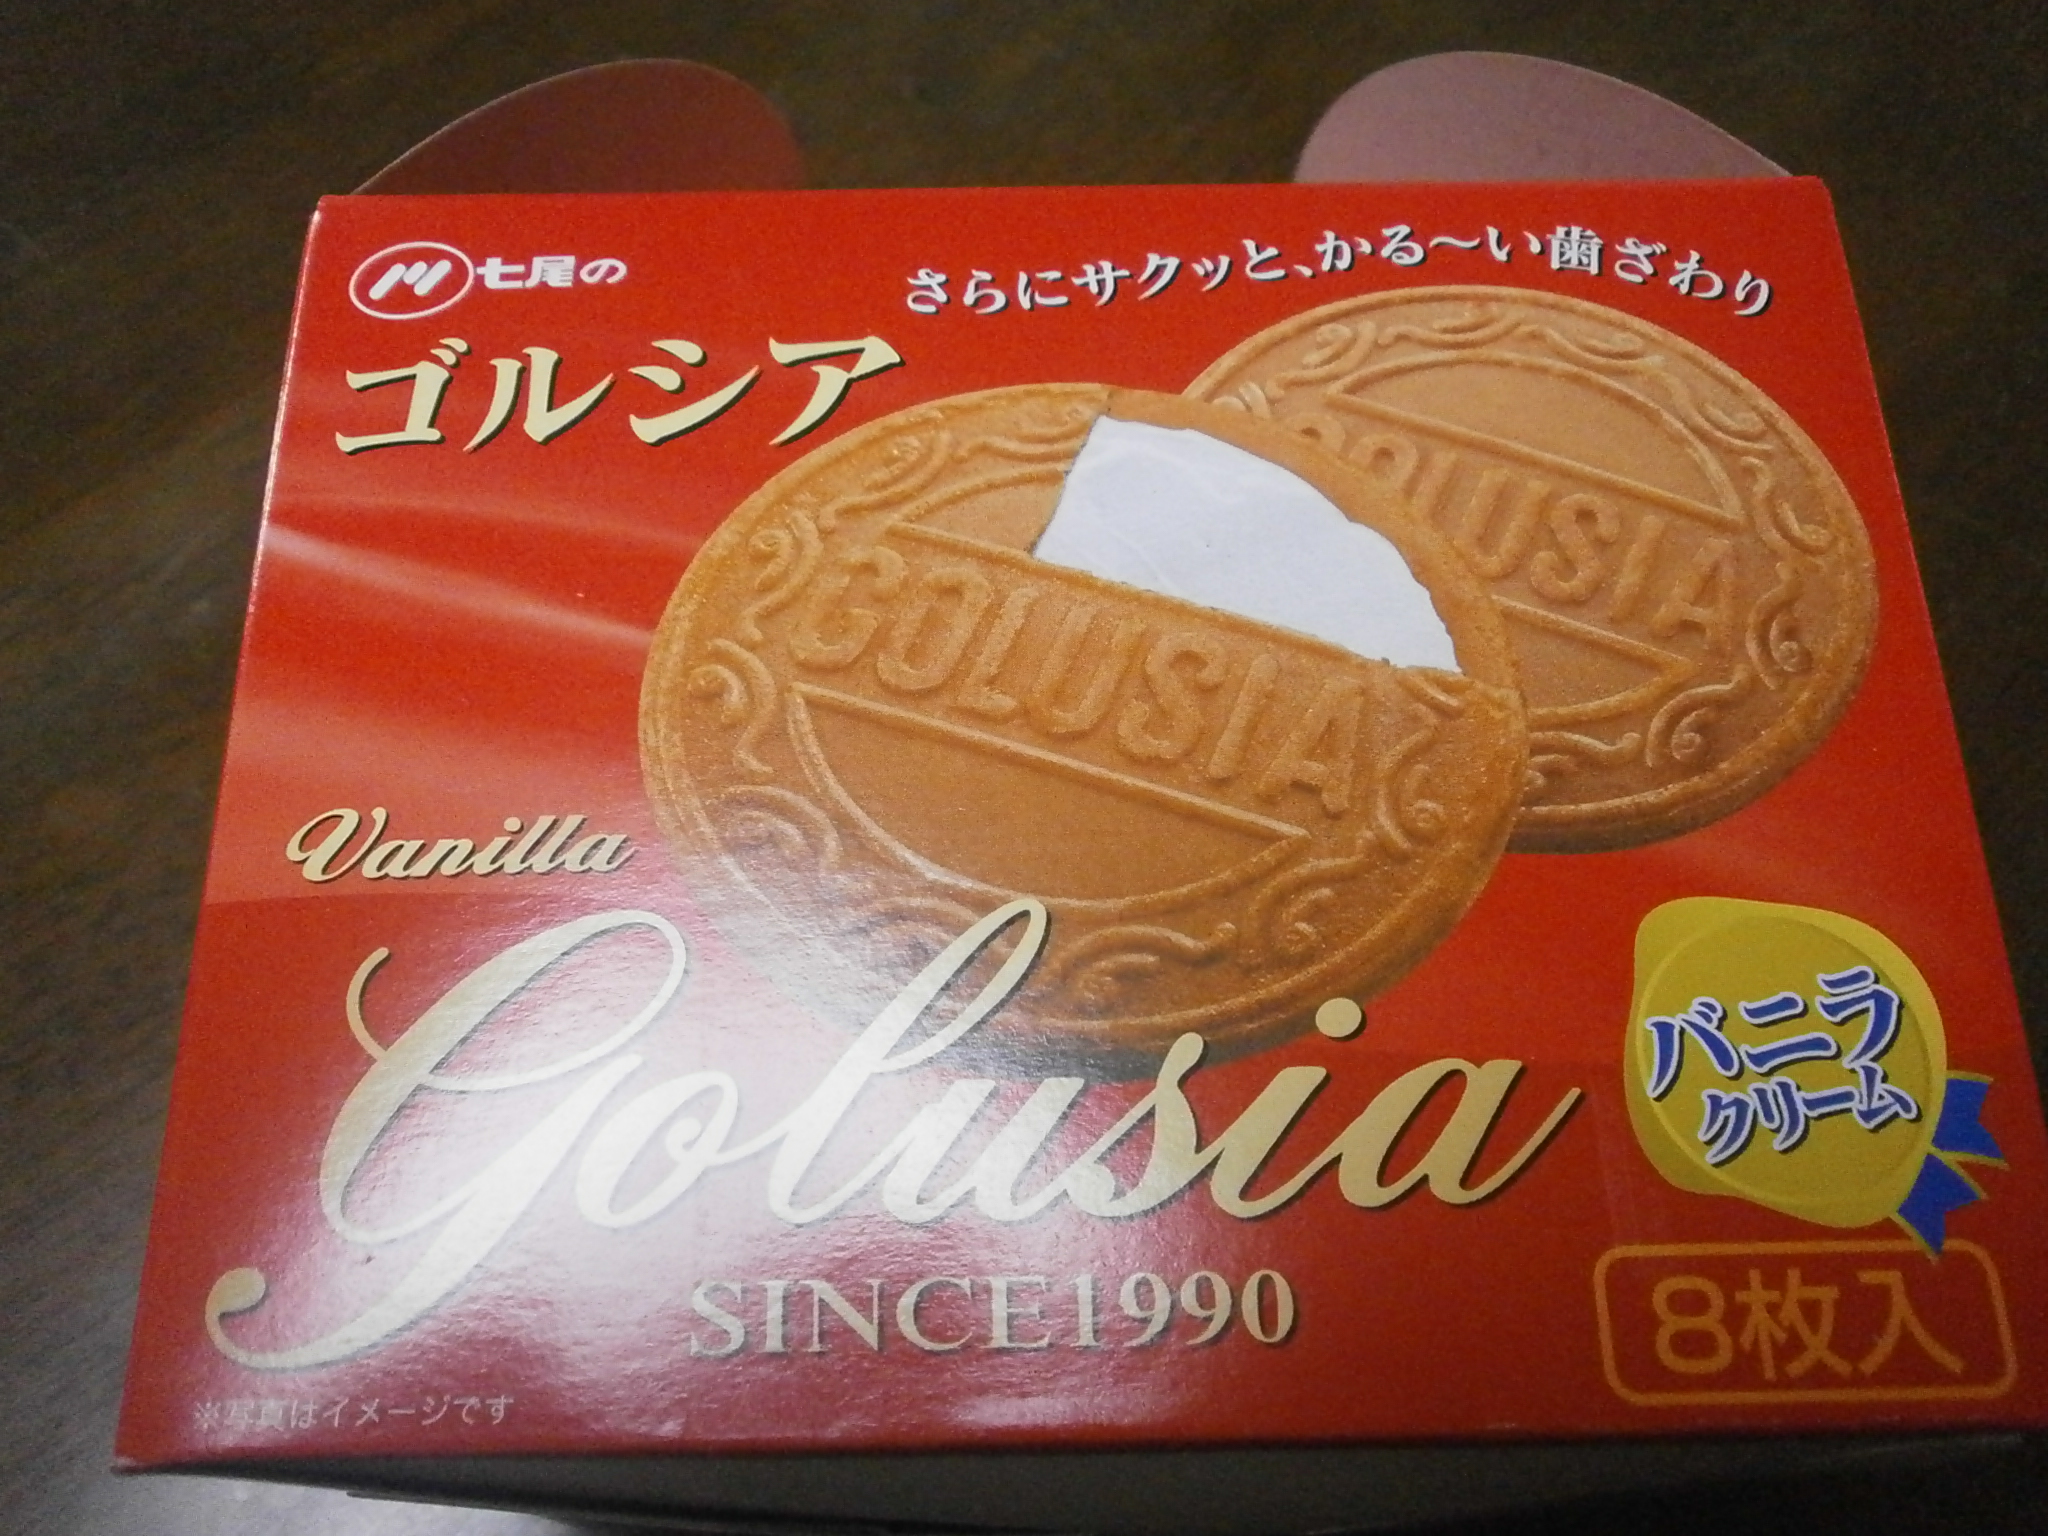 Gorushia (crema alla vaniglia)